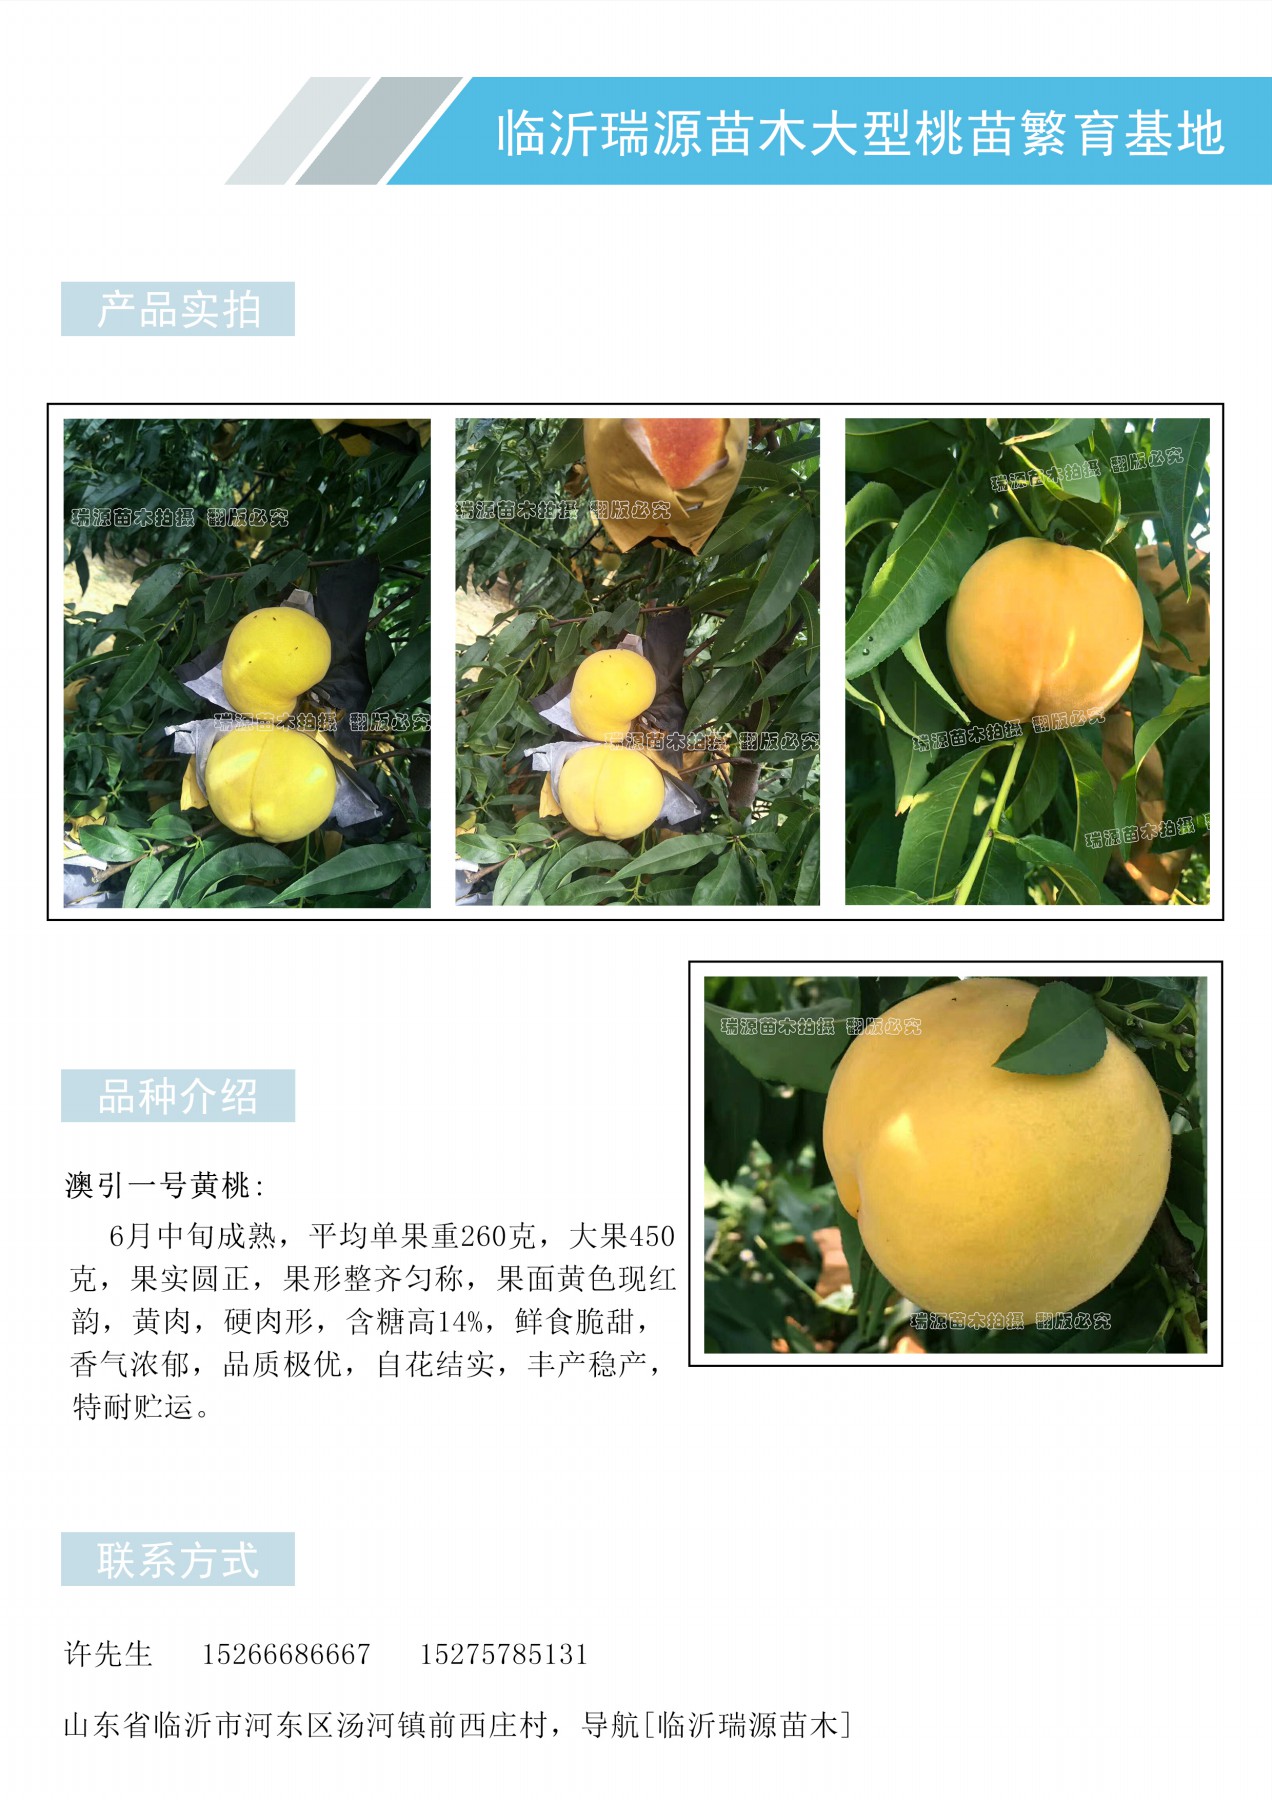 七月成熟的桃子品种_七月成熟的桃子品种图片介绍